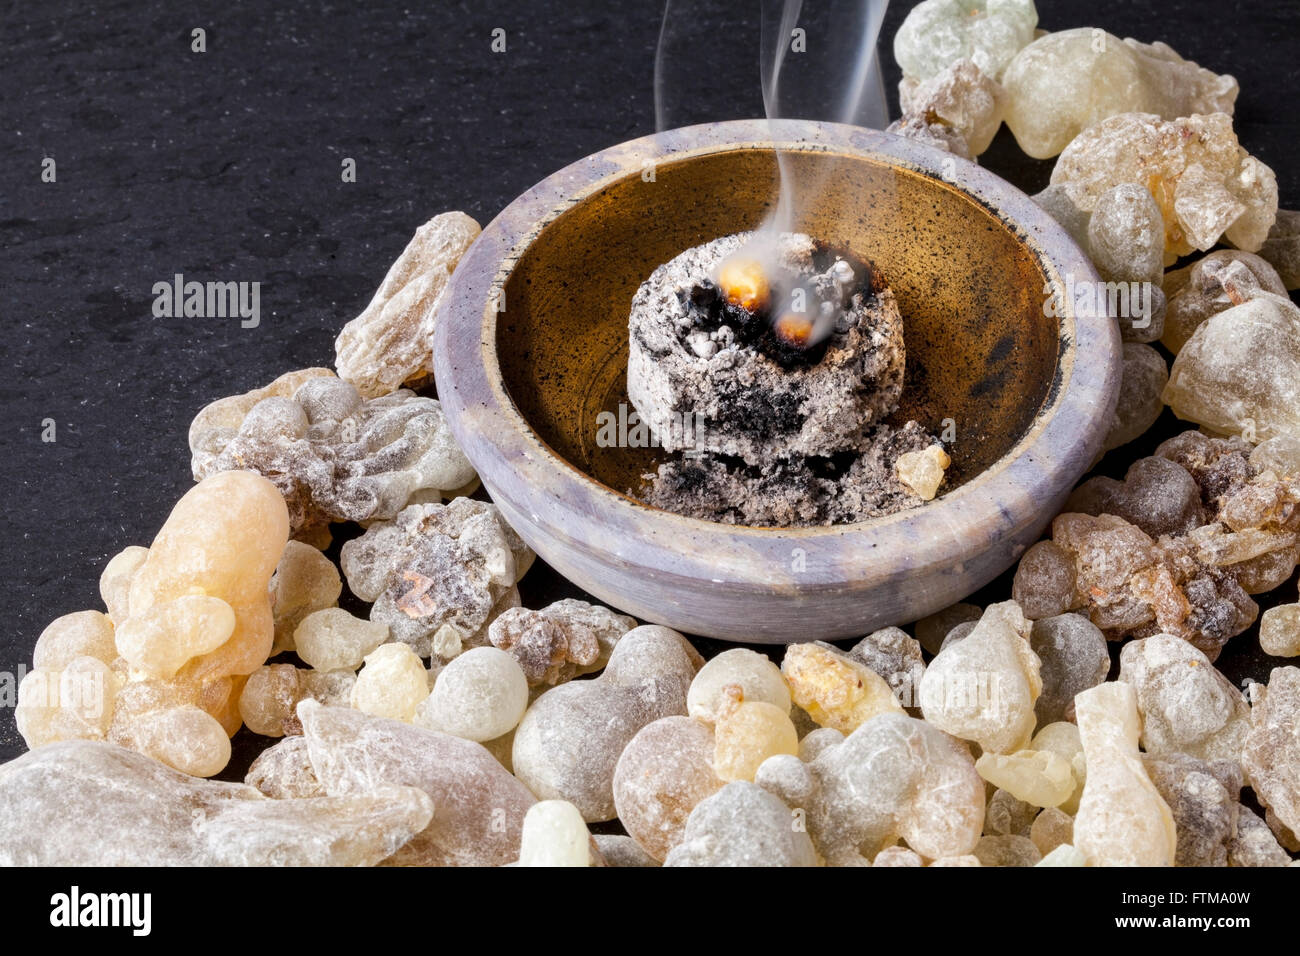 Rankincense brûler sur un charbon chaud. L'encens est une résine aromatique, utilisée pour les rites religieux, l'encens et des parfums. Banque D'Images